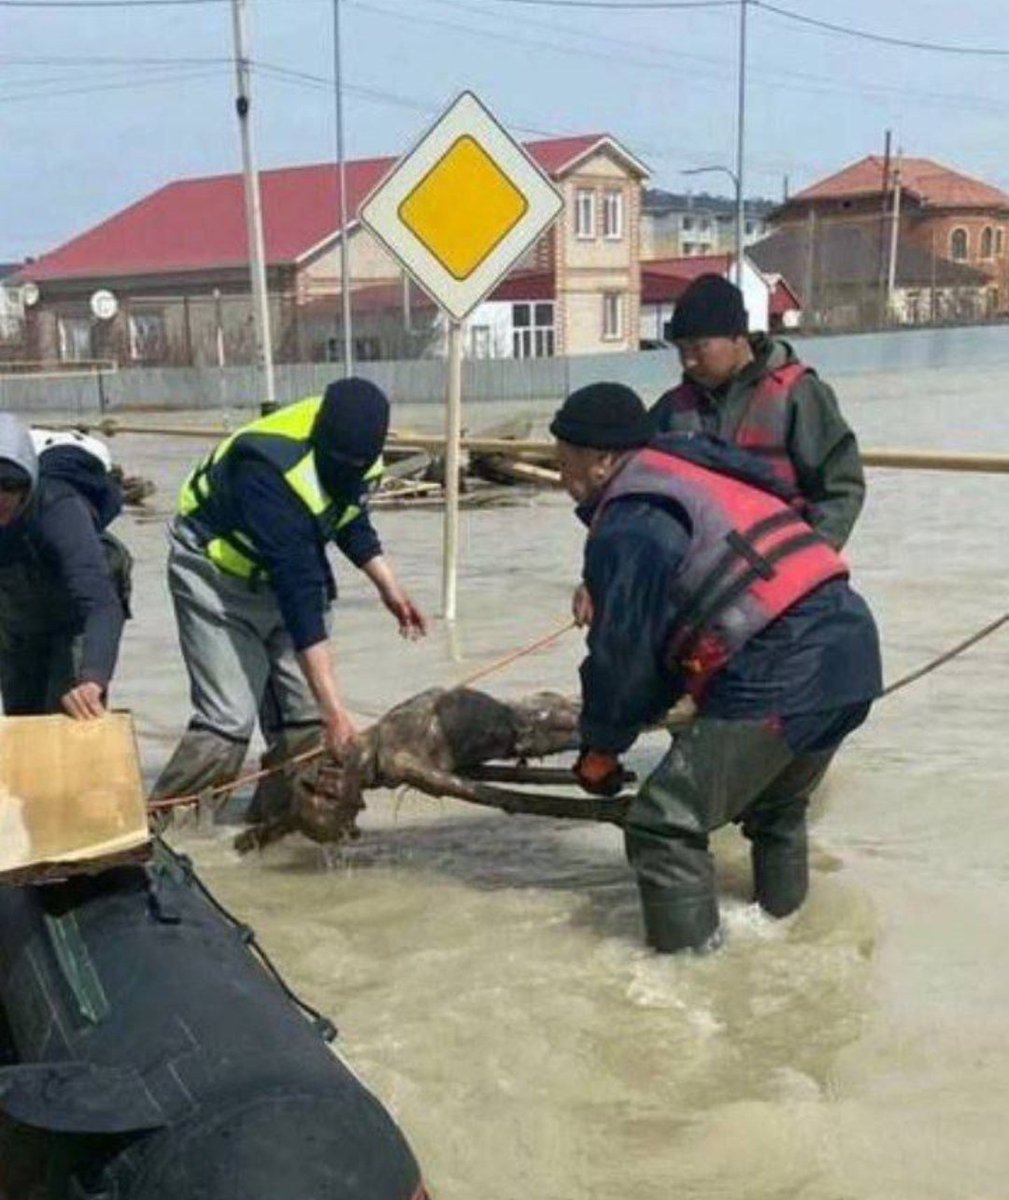 Kazakistan'da sel nedeniyle çok sayıda mezarlık sular altında kaldı ve mezardan sel nedeniyleçıktı, şimdi cesetler şehrin etrafında yüzüyor